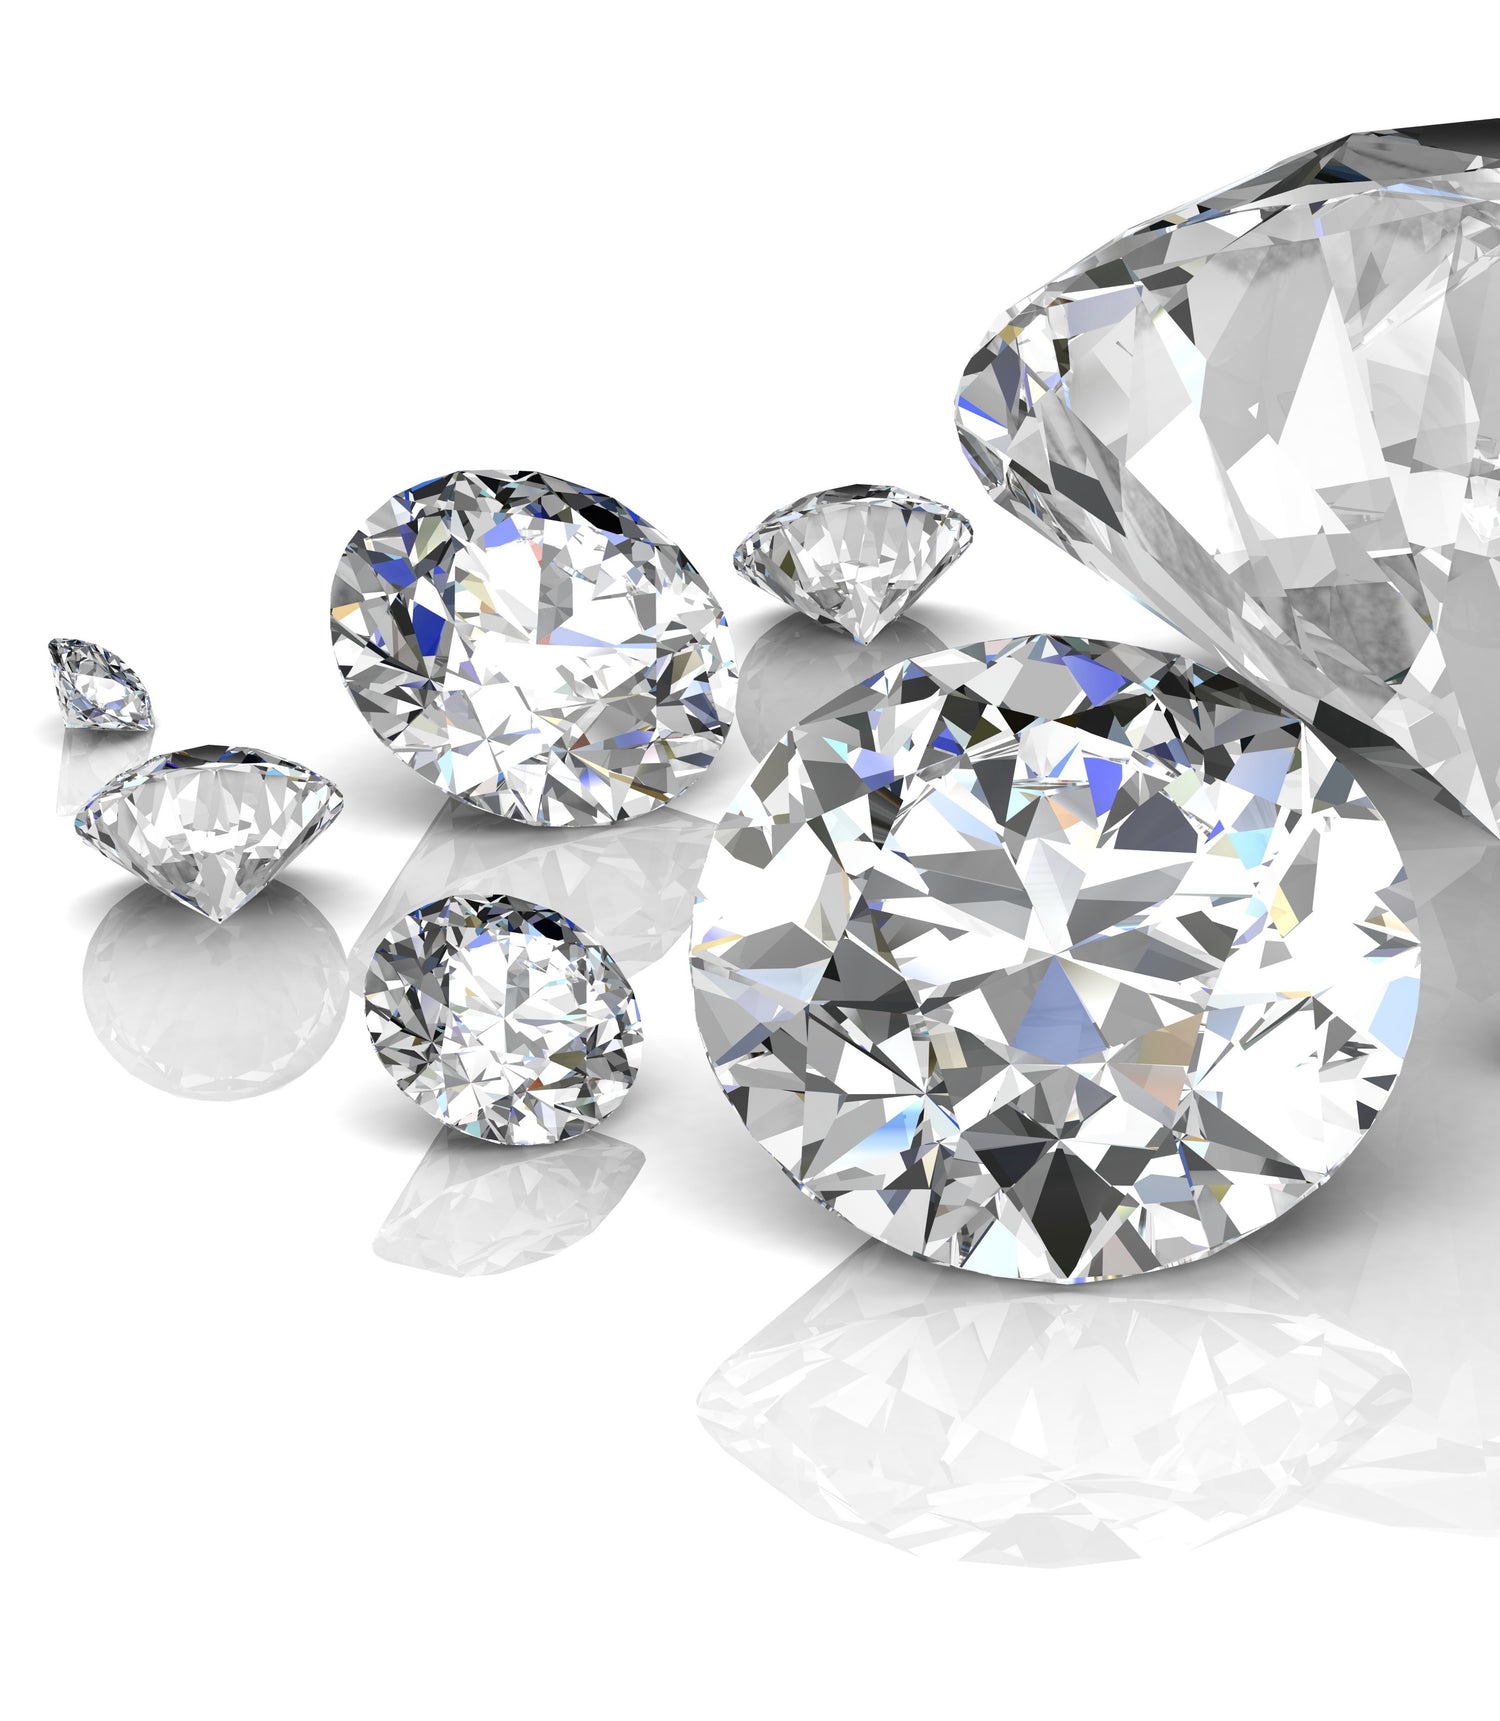 diamond buying guide, how to choose a diamond, lab grown diamonds, best diamond jewellery, diamond clarity, VVS diamonds, VS diamond